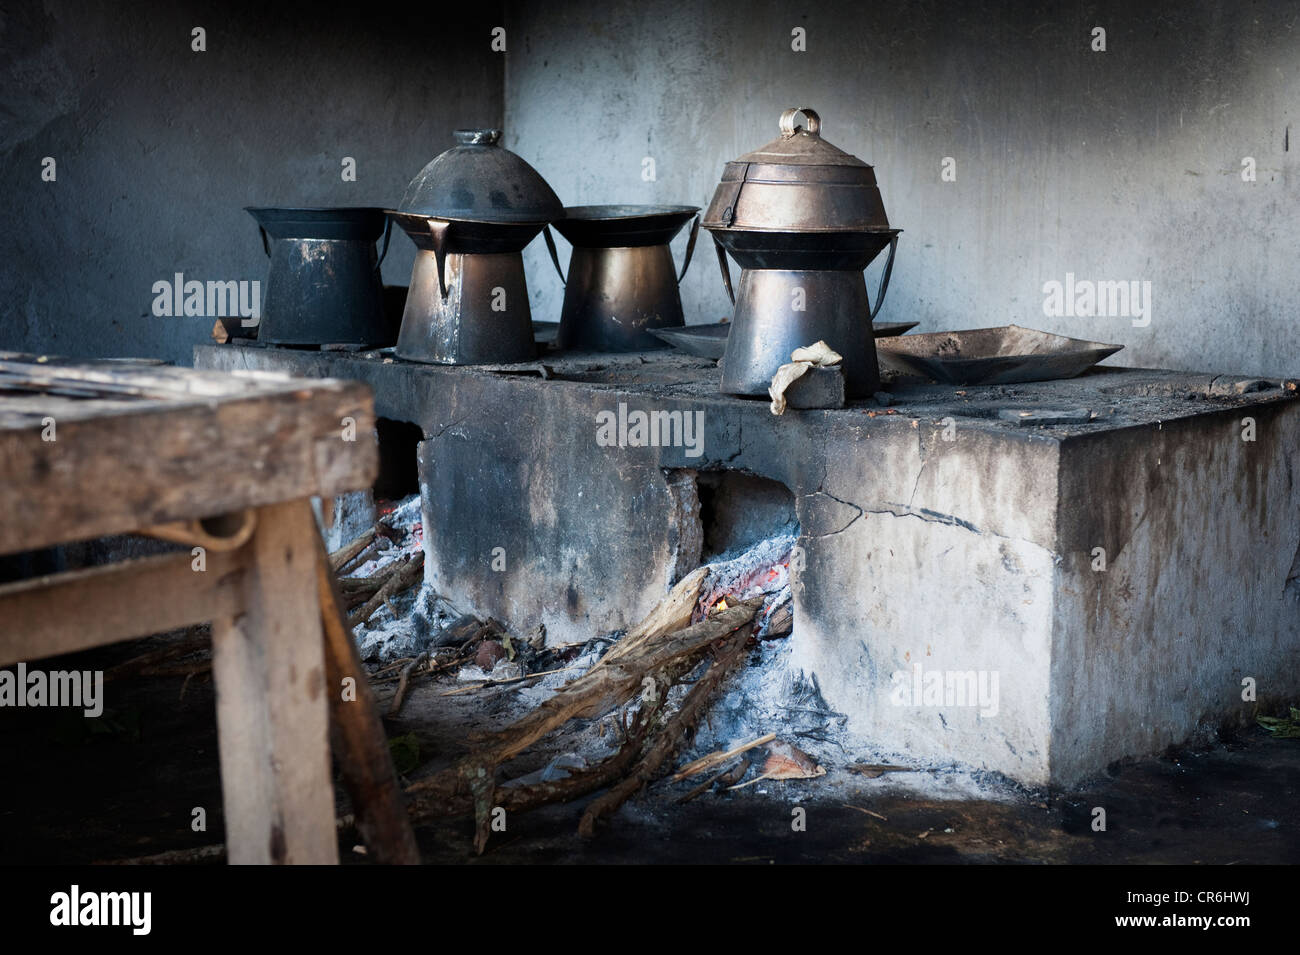 Eine balinesische Küche verwendet immer noch Holz zum Kochen anlässlich einer Hindu-Tempel, ein Odalan genannt. Stockfoto